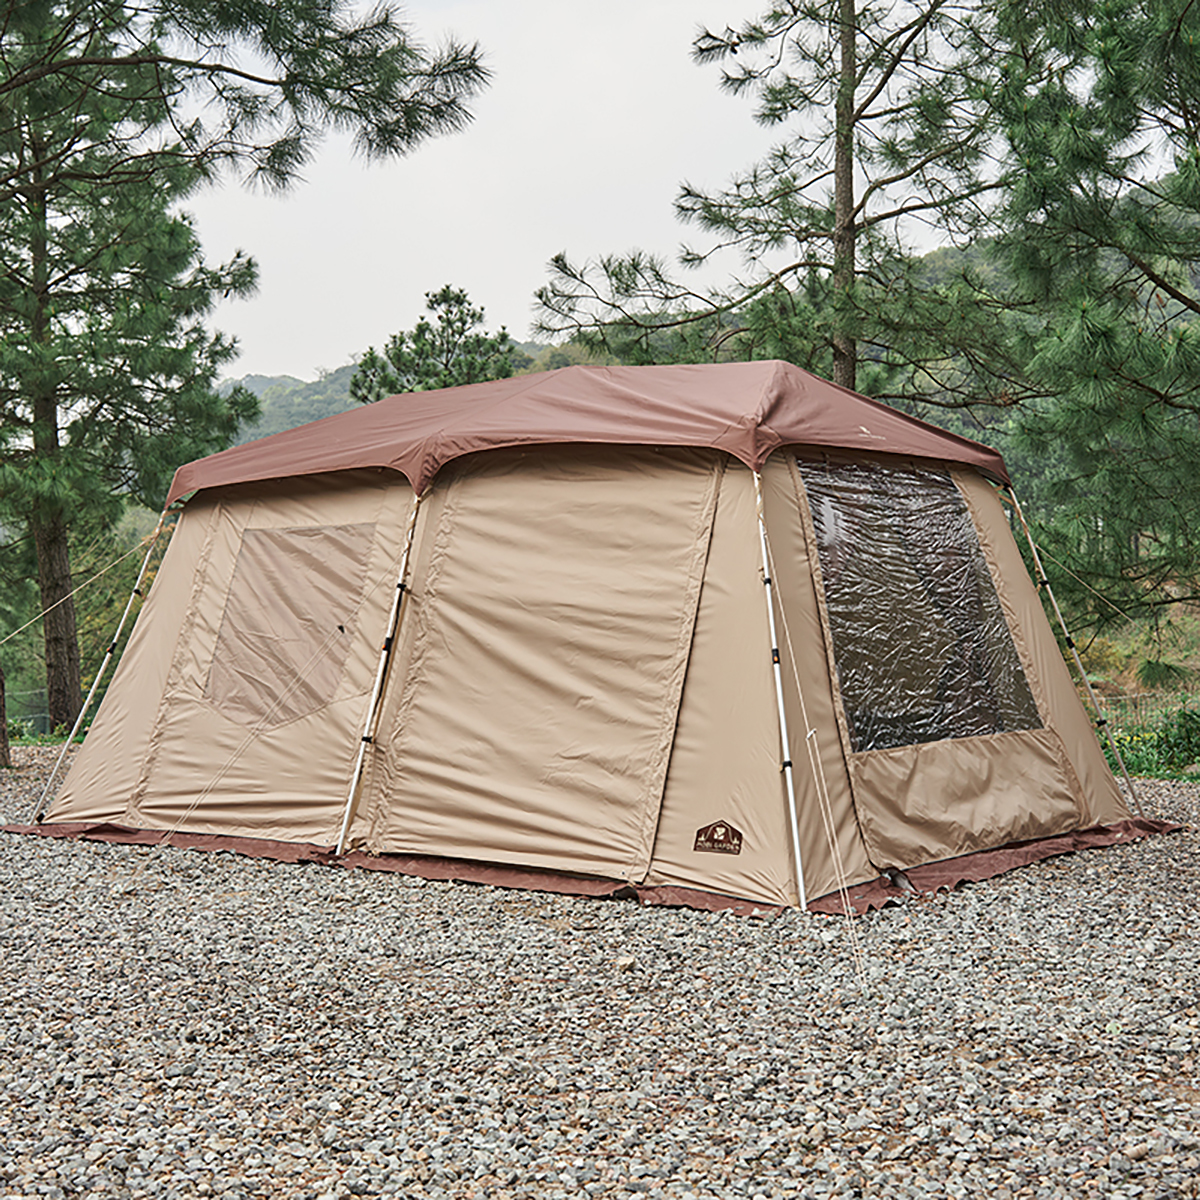 MOBI GARDEN テント 4人用 二重層PU耐水圧3000mm シルバーコーティングUPF50+ 紫外線防止 自動クイックテント ファミリーキャンプ サンド色_画像2